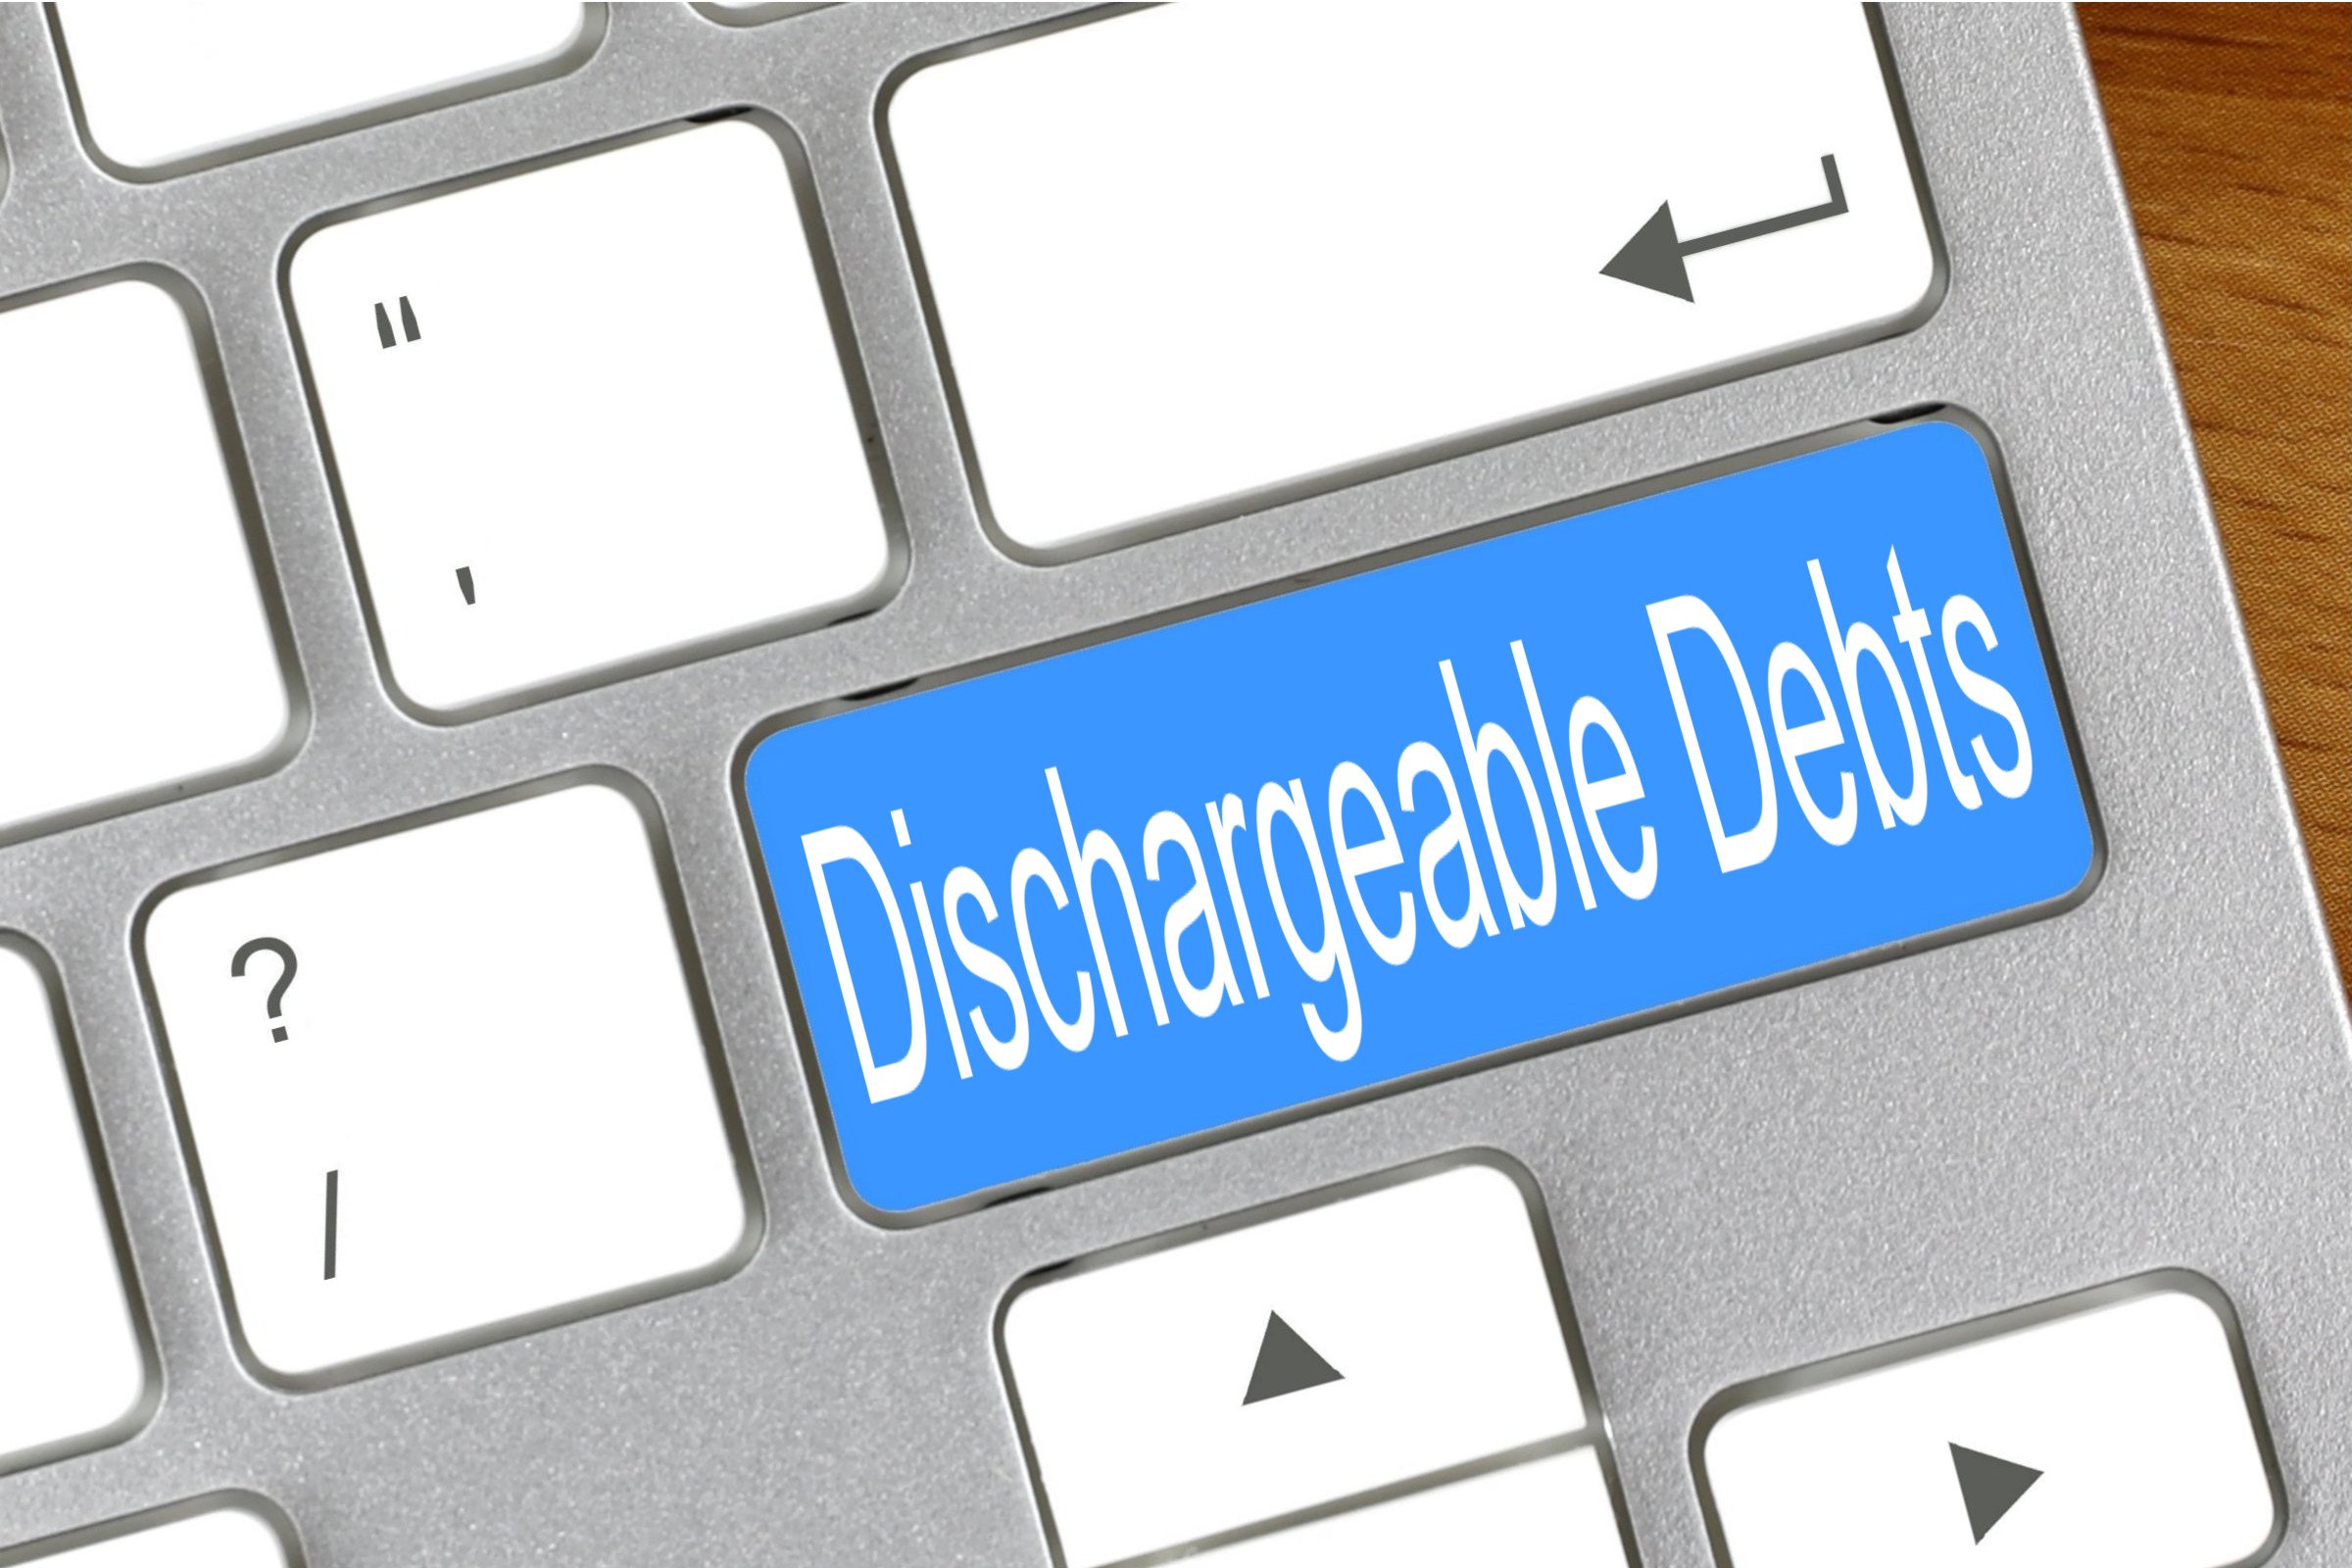 dischargeable debts